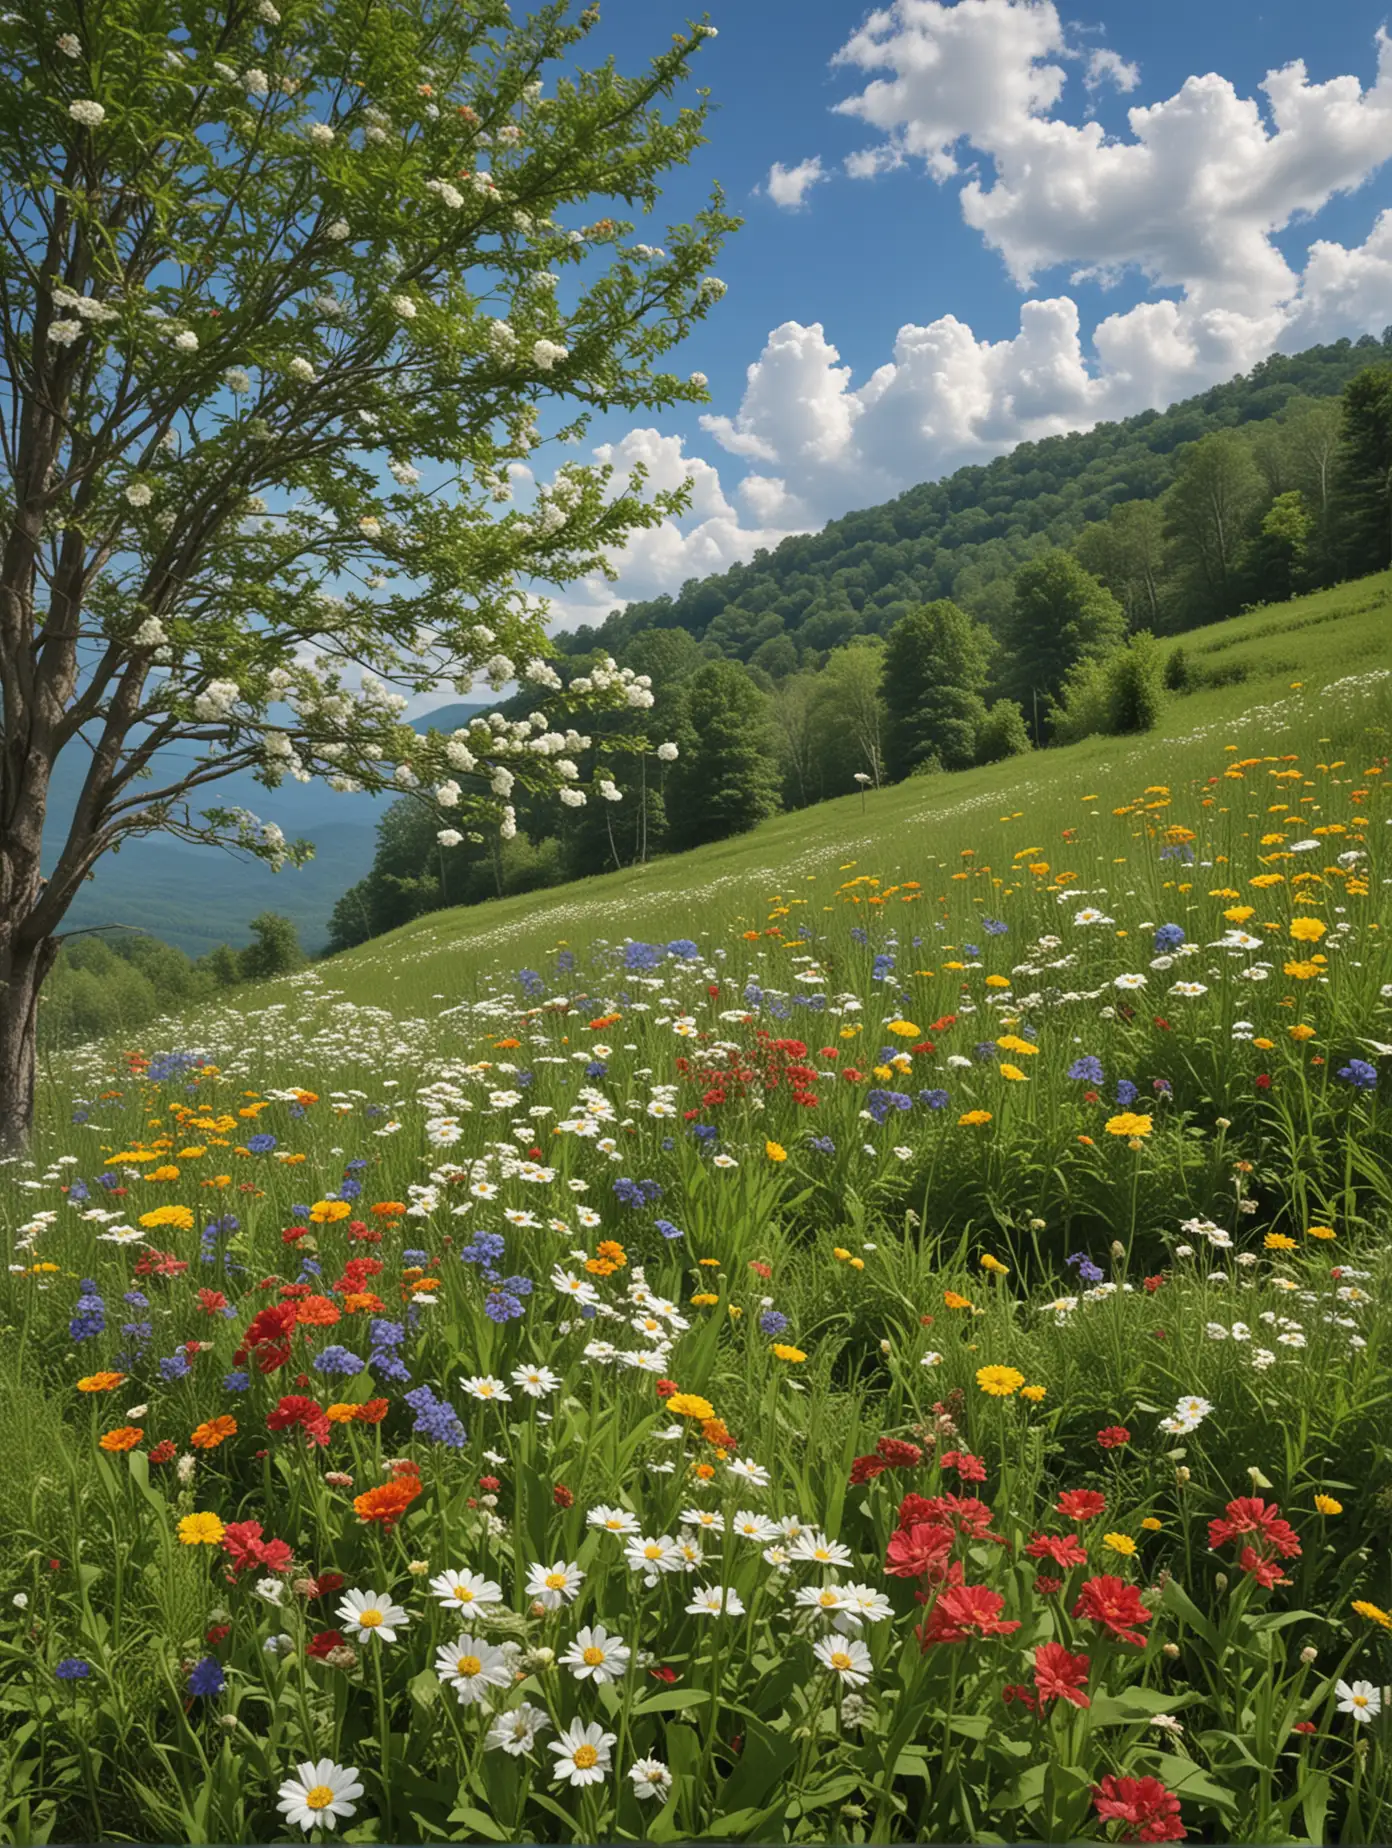 Wildflowers and Appalachian Scenery in Eastern Kentucky